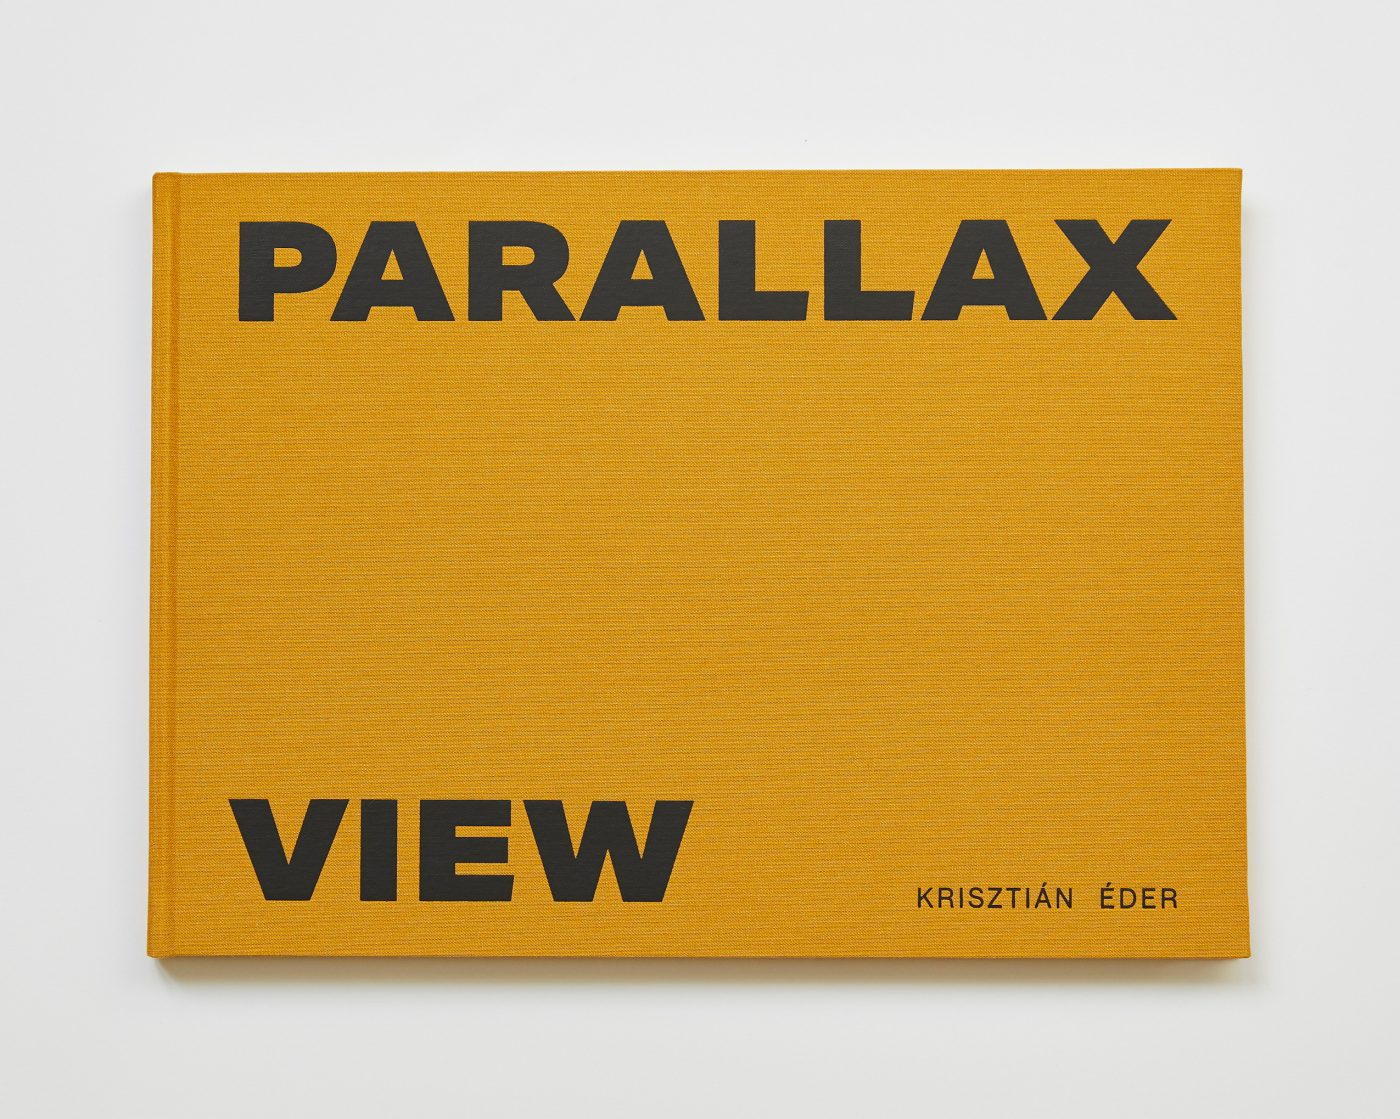 Parallax View